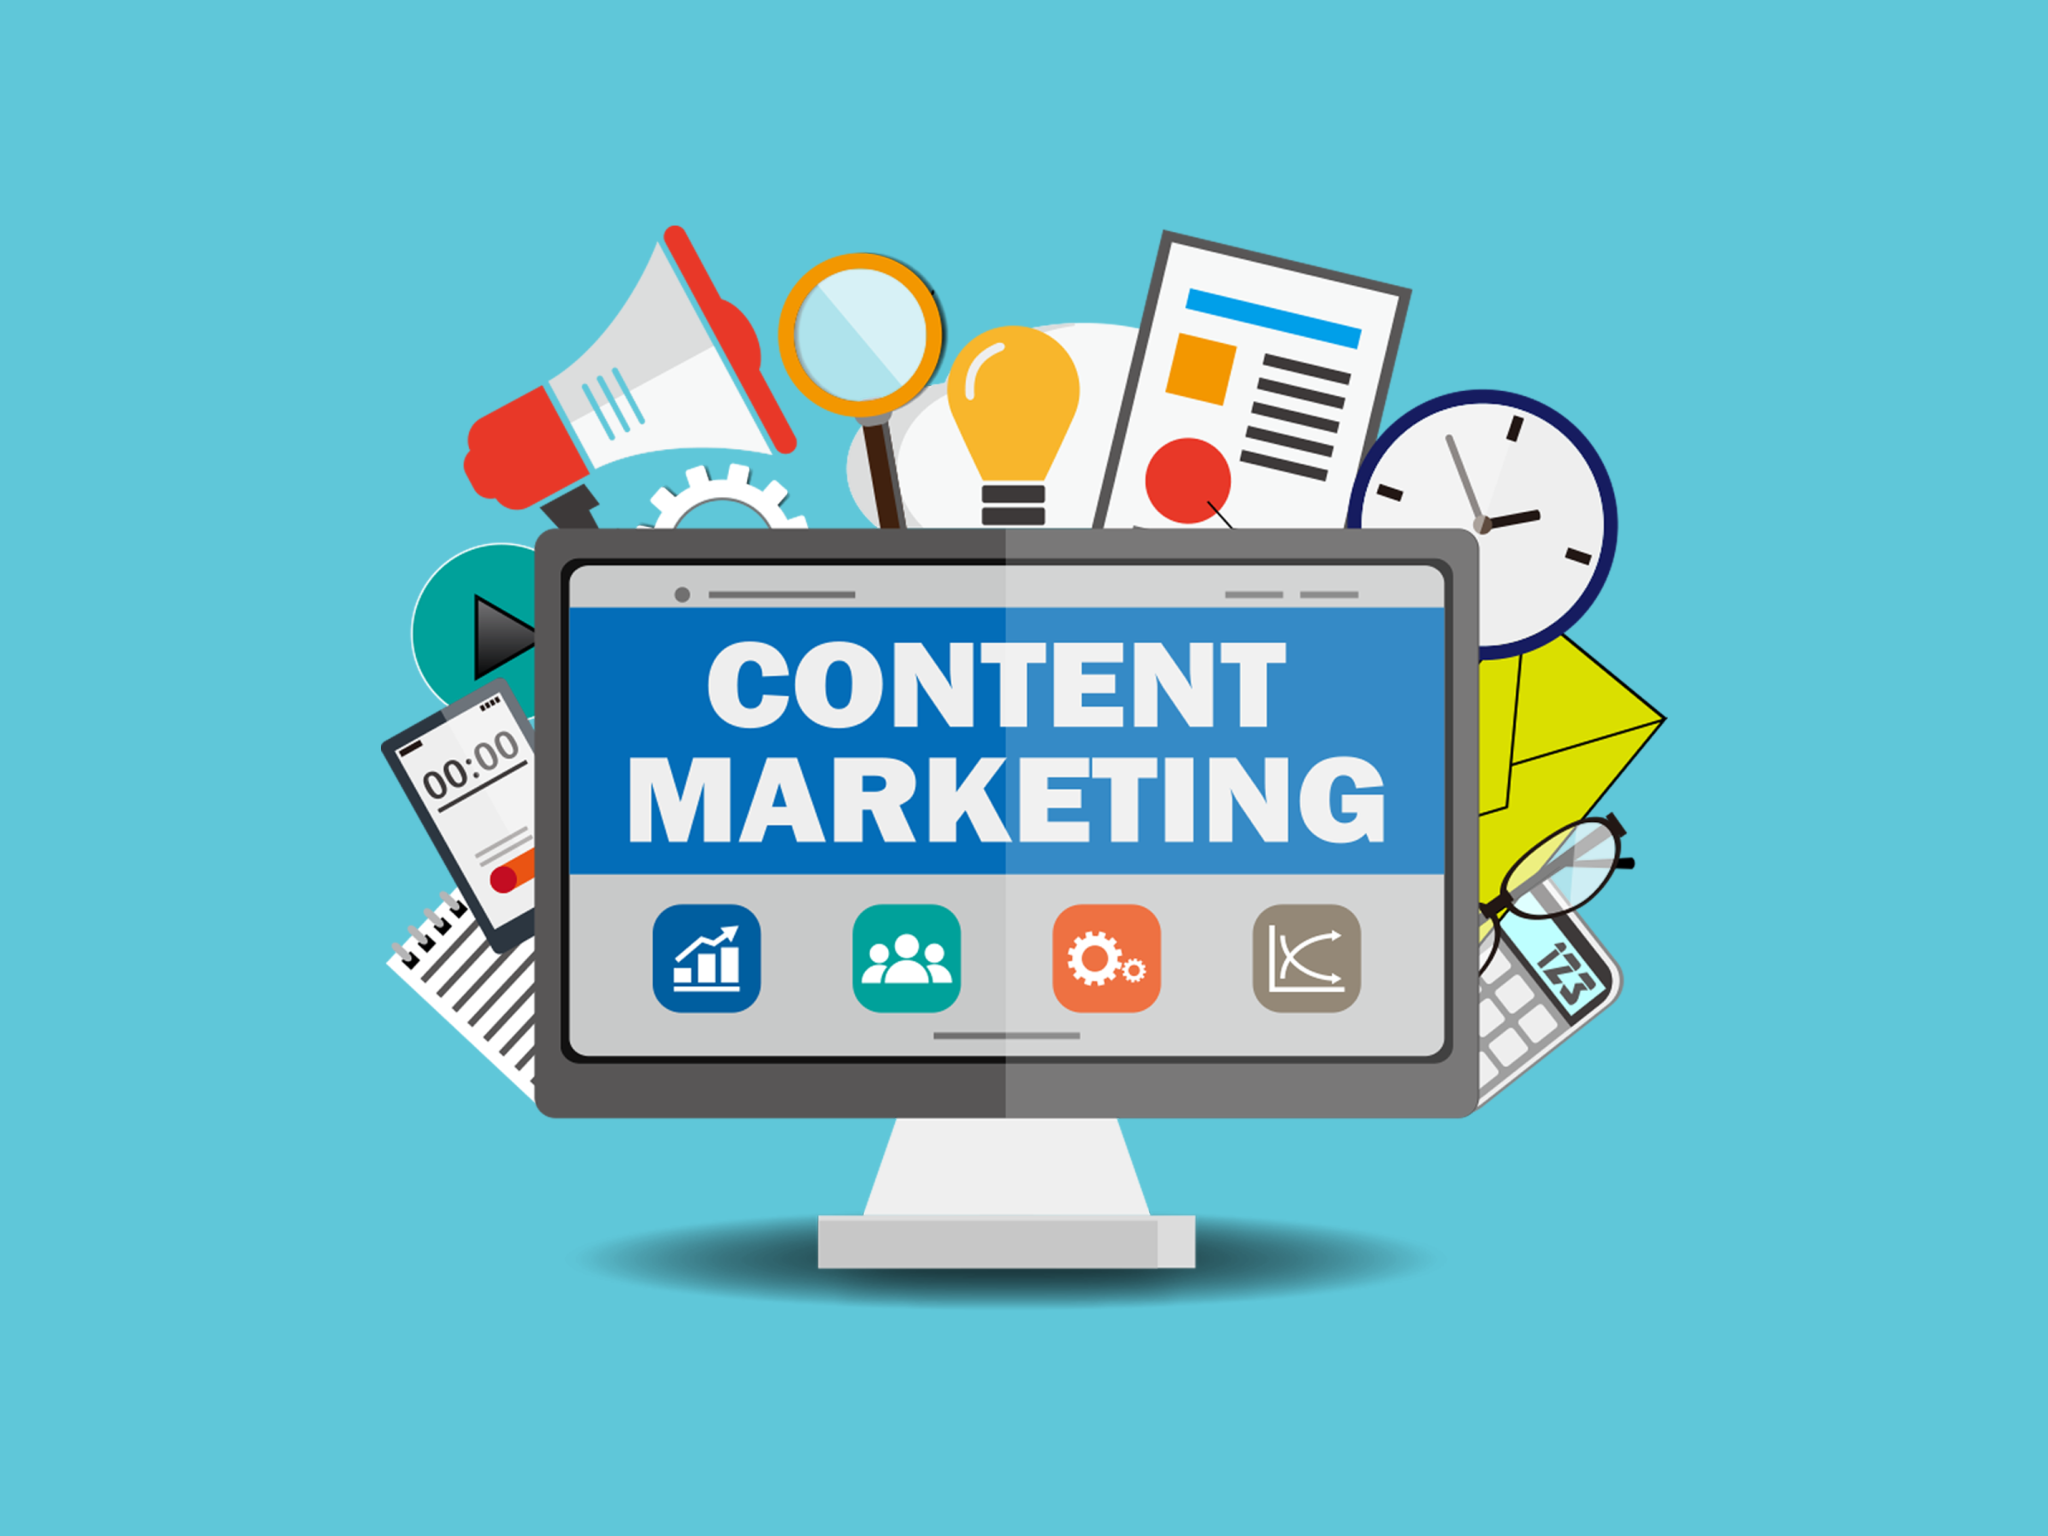 Бесплатный контент. Качество контента. Content marketing. Контент маркетинг картинки. Контент PNG.